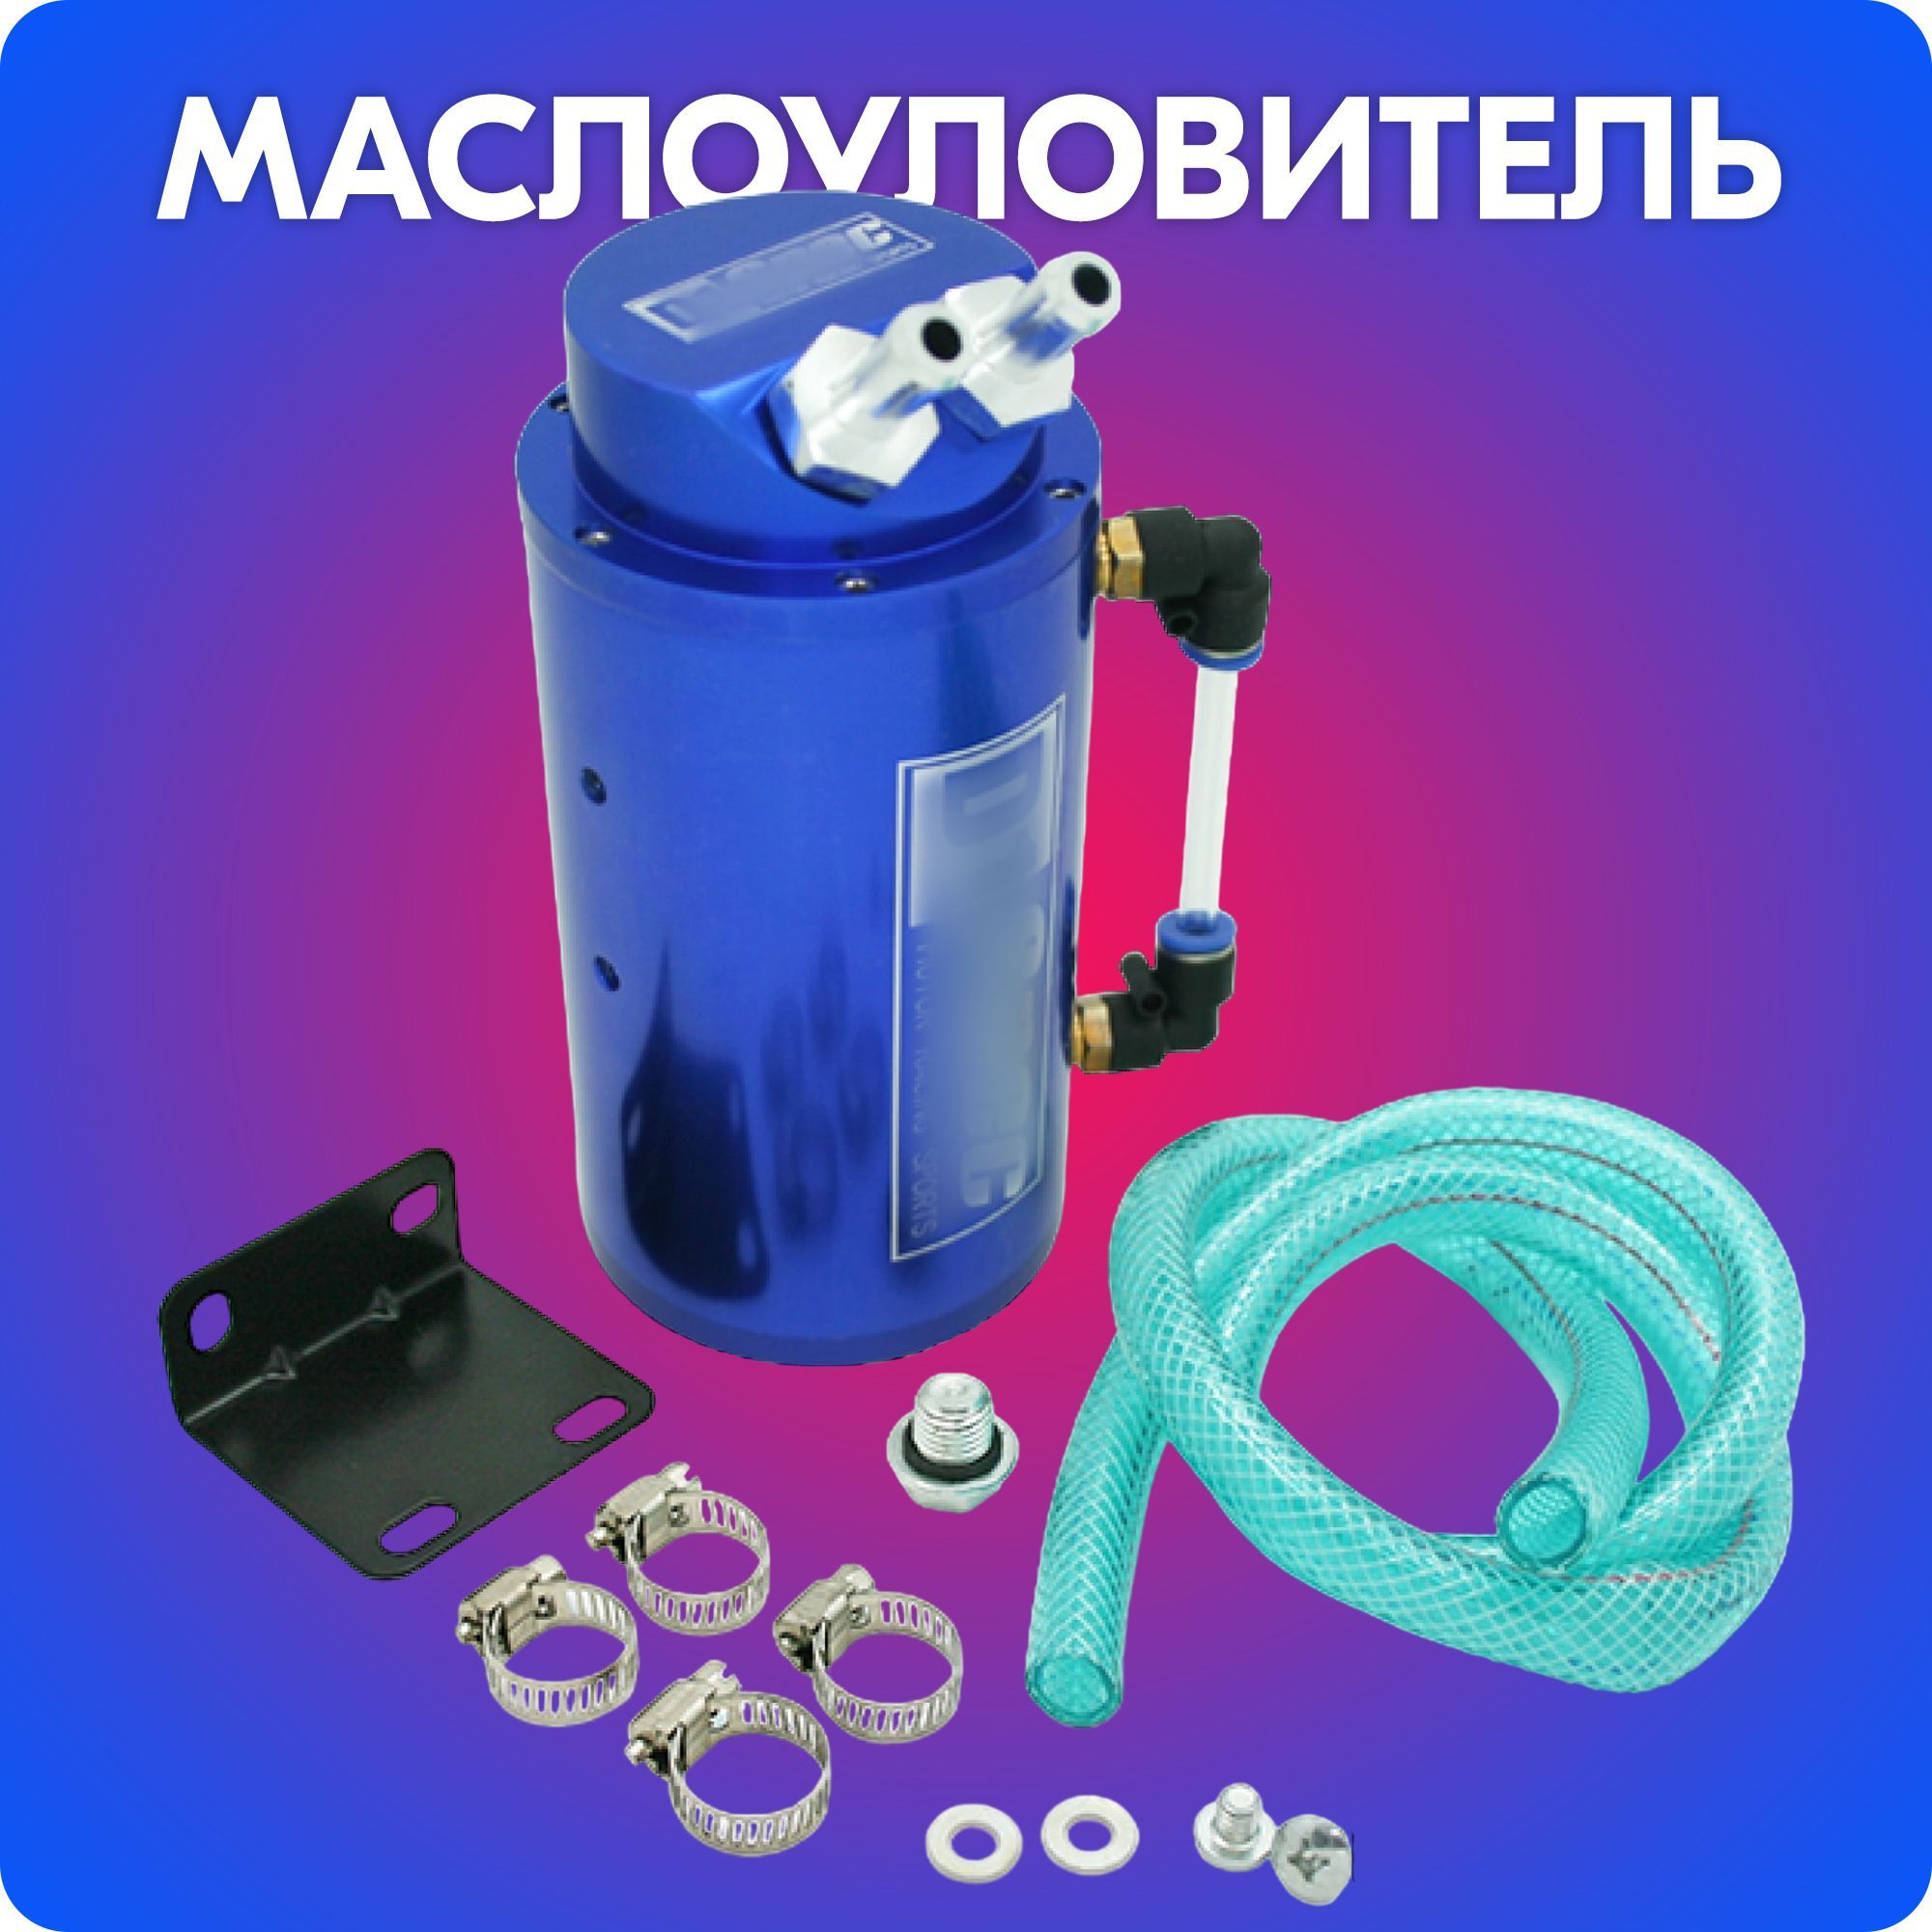 МаслоуловительD1,маслосборник/маслопомойкакартерныхгазов(синий)